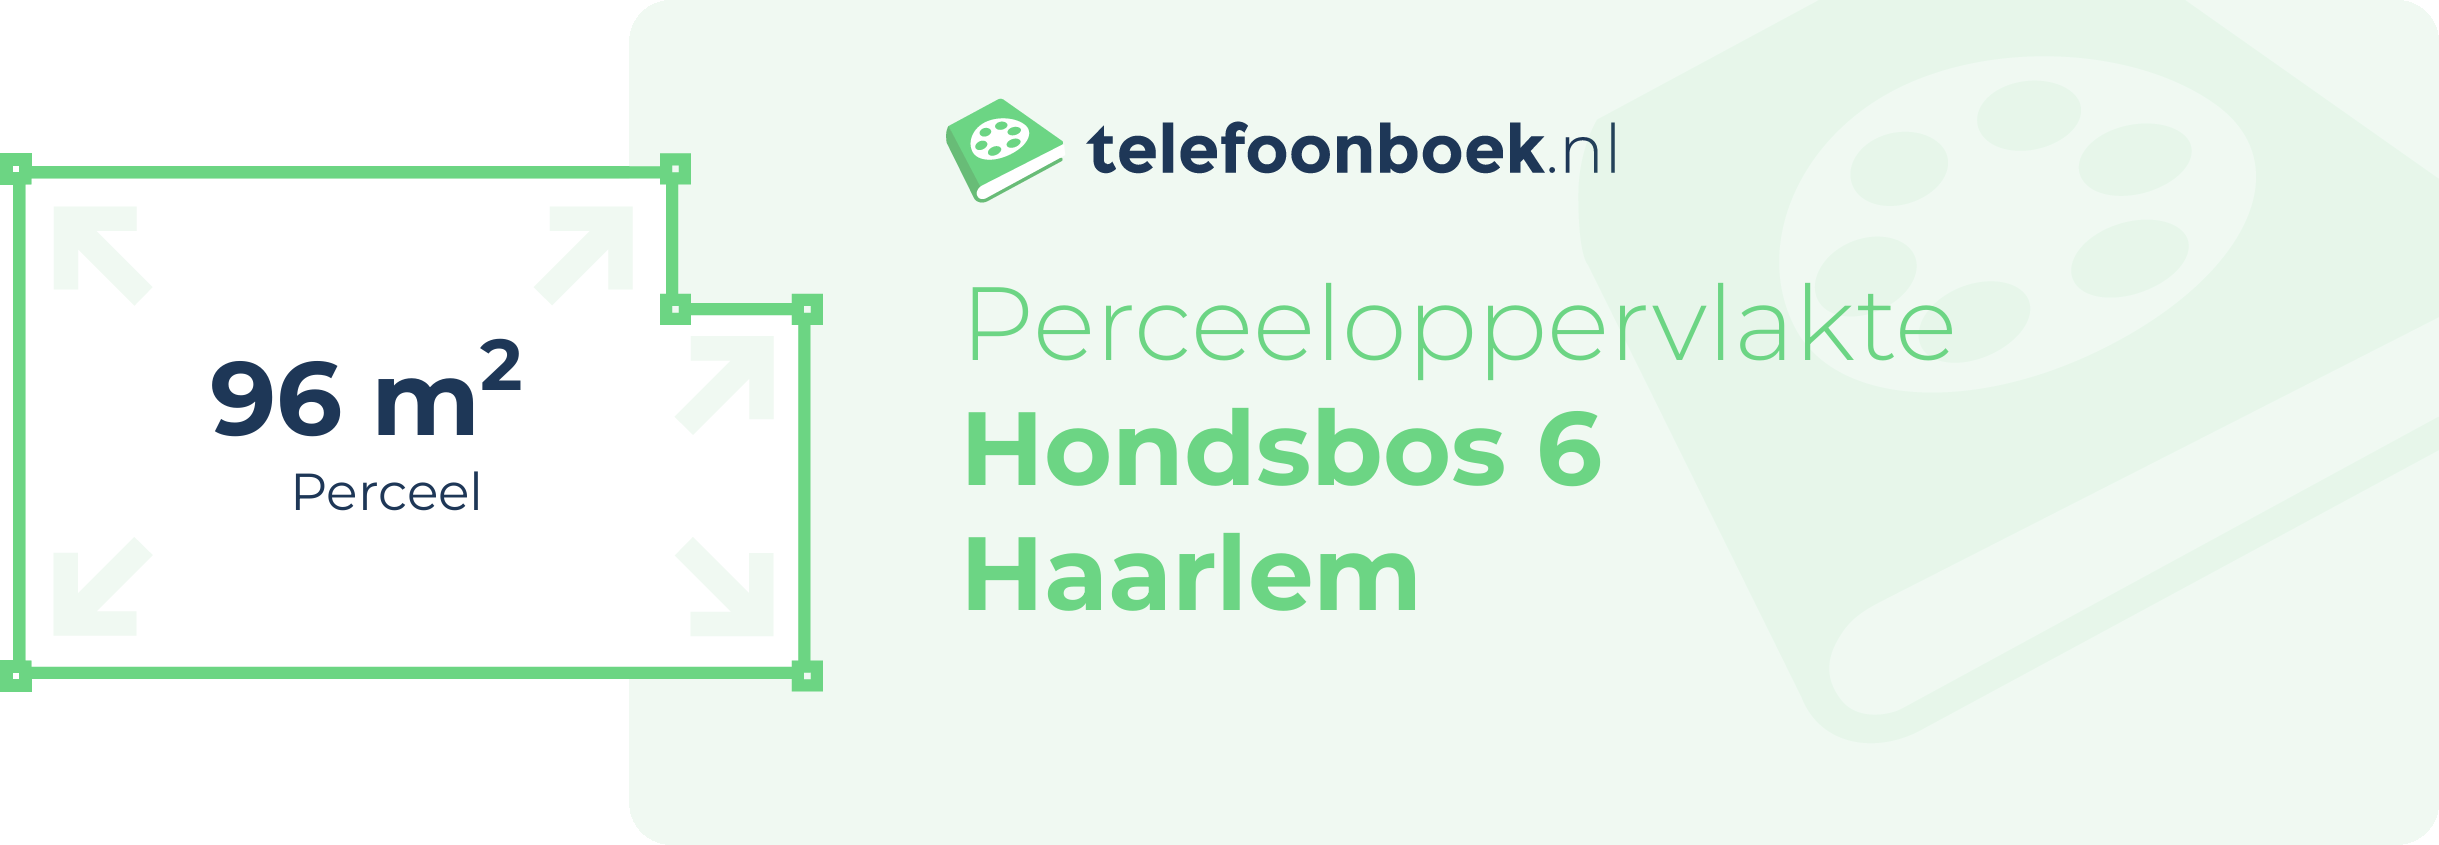 Perceeloppervlakte Hondsbos 6 Haarlem